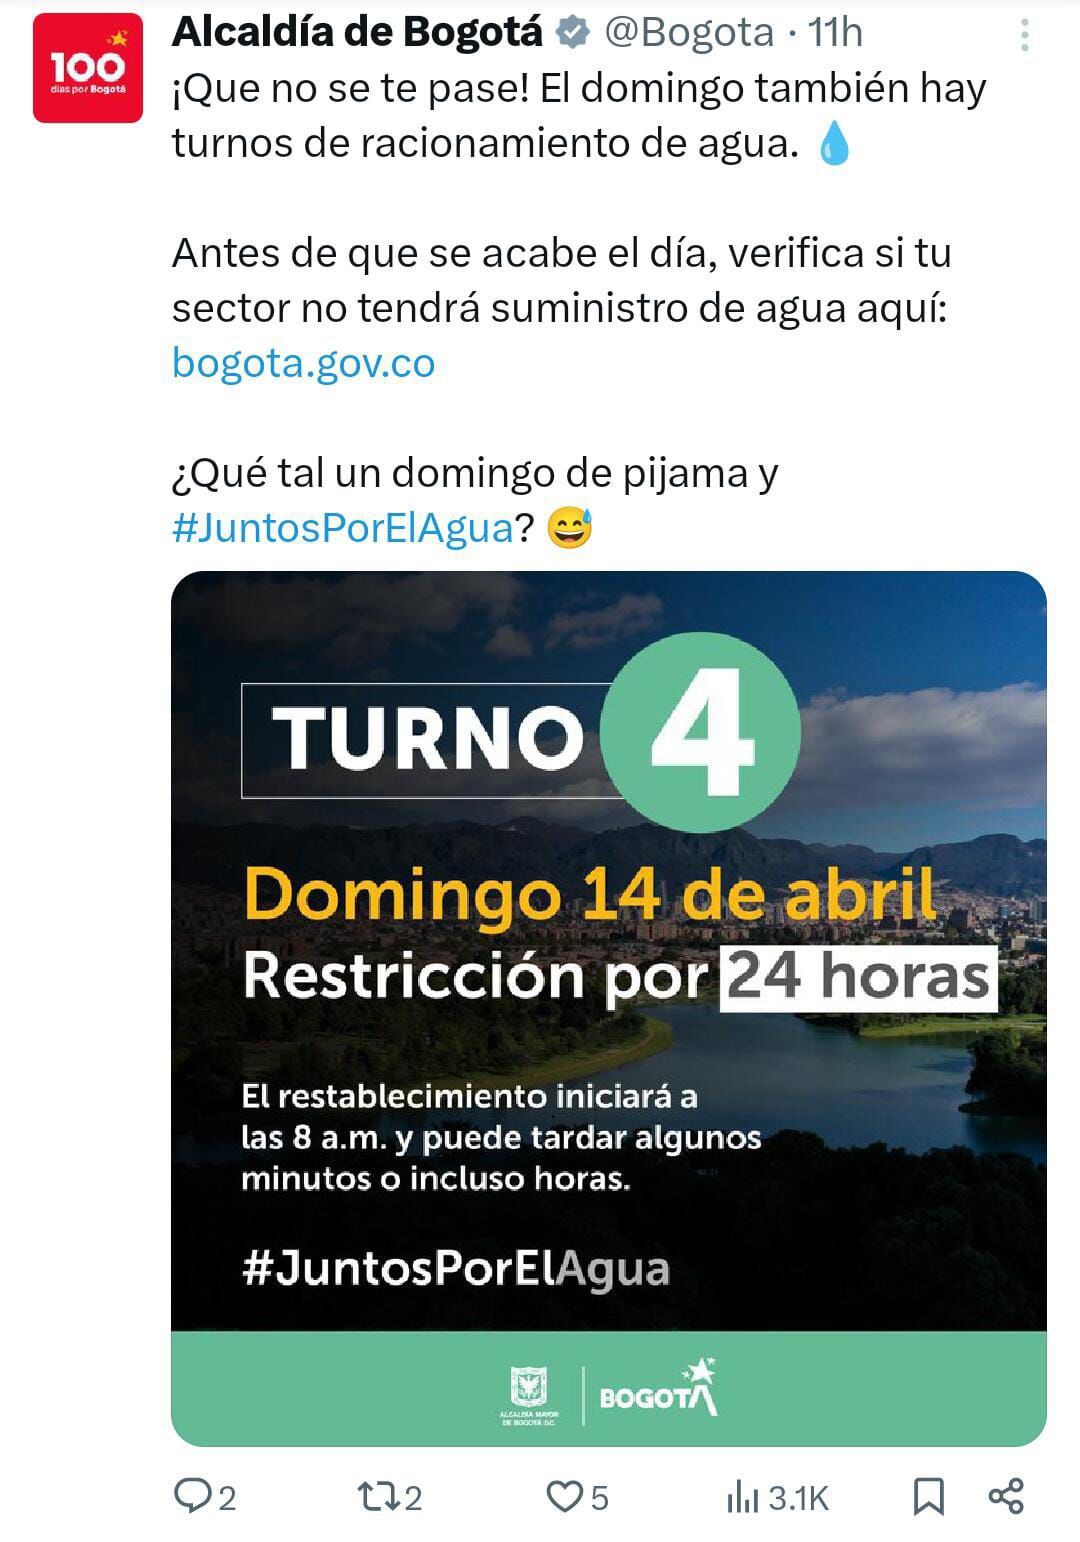 Esta fue la información que la Alcaldía de Bogotá publicó anunciando el racionamiento de agua para el sector 4 en la ciudad.